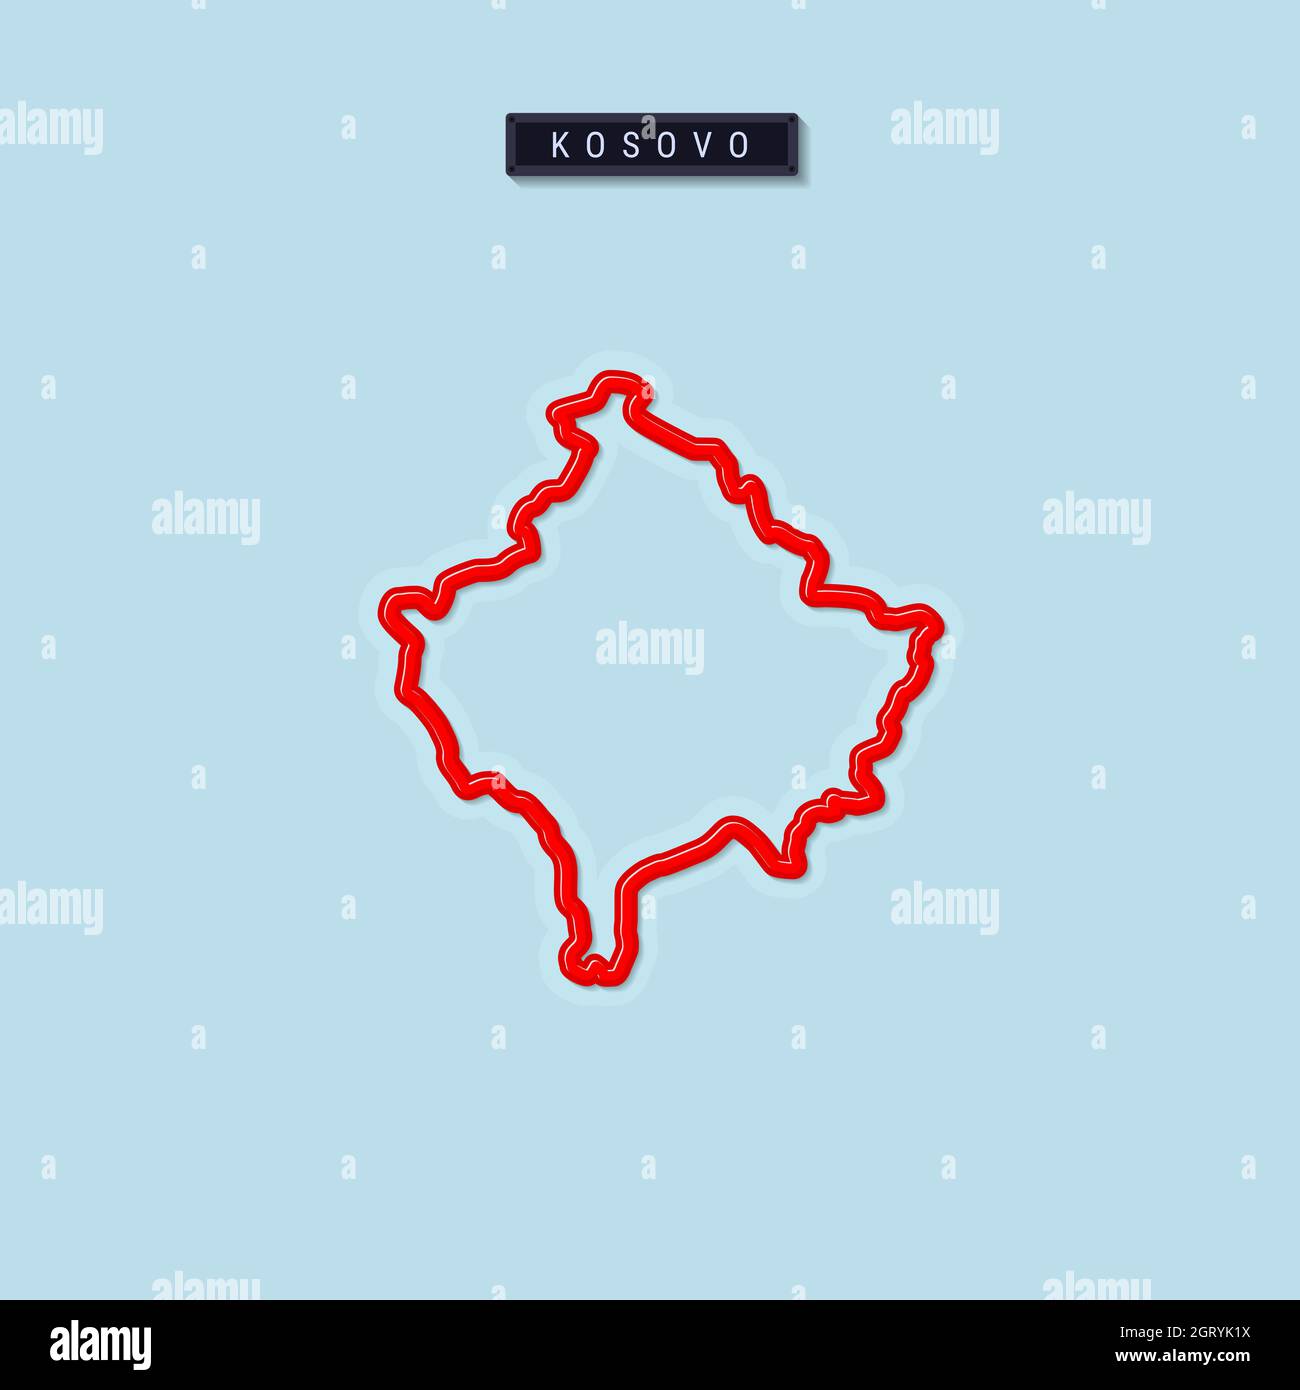 Mappa del Kosovo in grassetto. Bordo rosso lucido con ombra morbida. Targhetta del paese. Illustrazione. Foto Stock